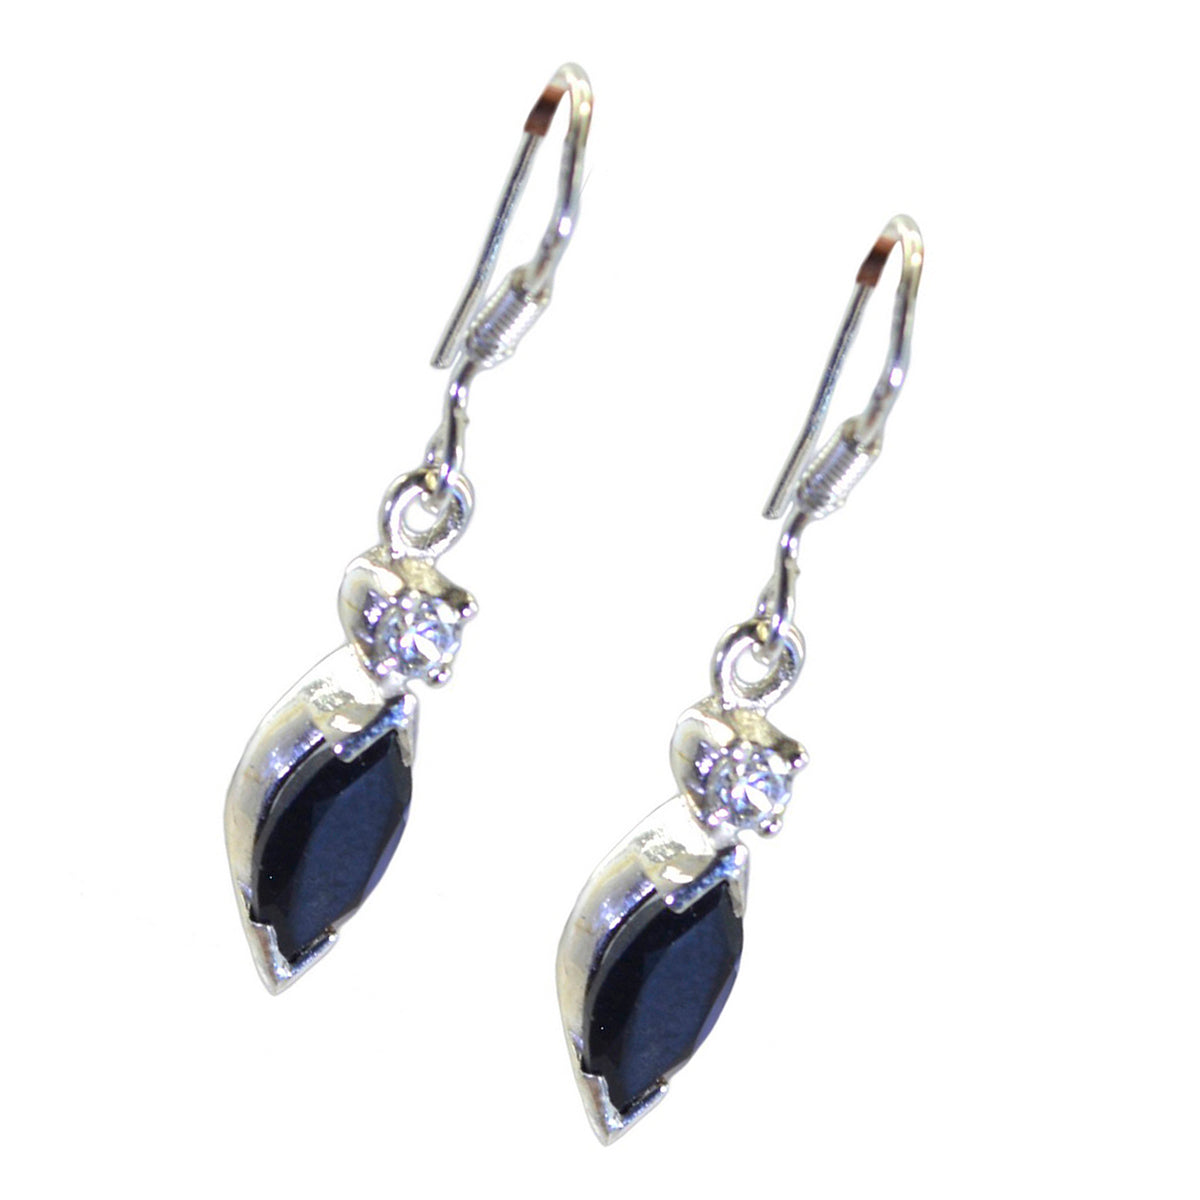 Riyo Winsome Sterling-Silber-Ohrring für Mädchen, schwarzer Onyx-Ohrring, Lünettenfassung, schwarzer Ohrring, baumelnder Ohrring